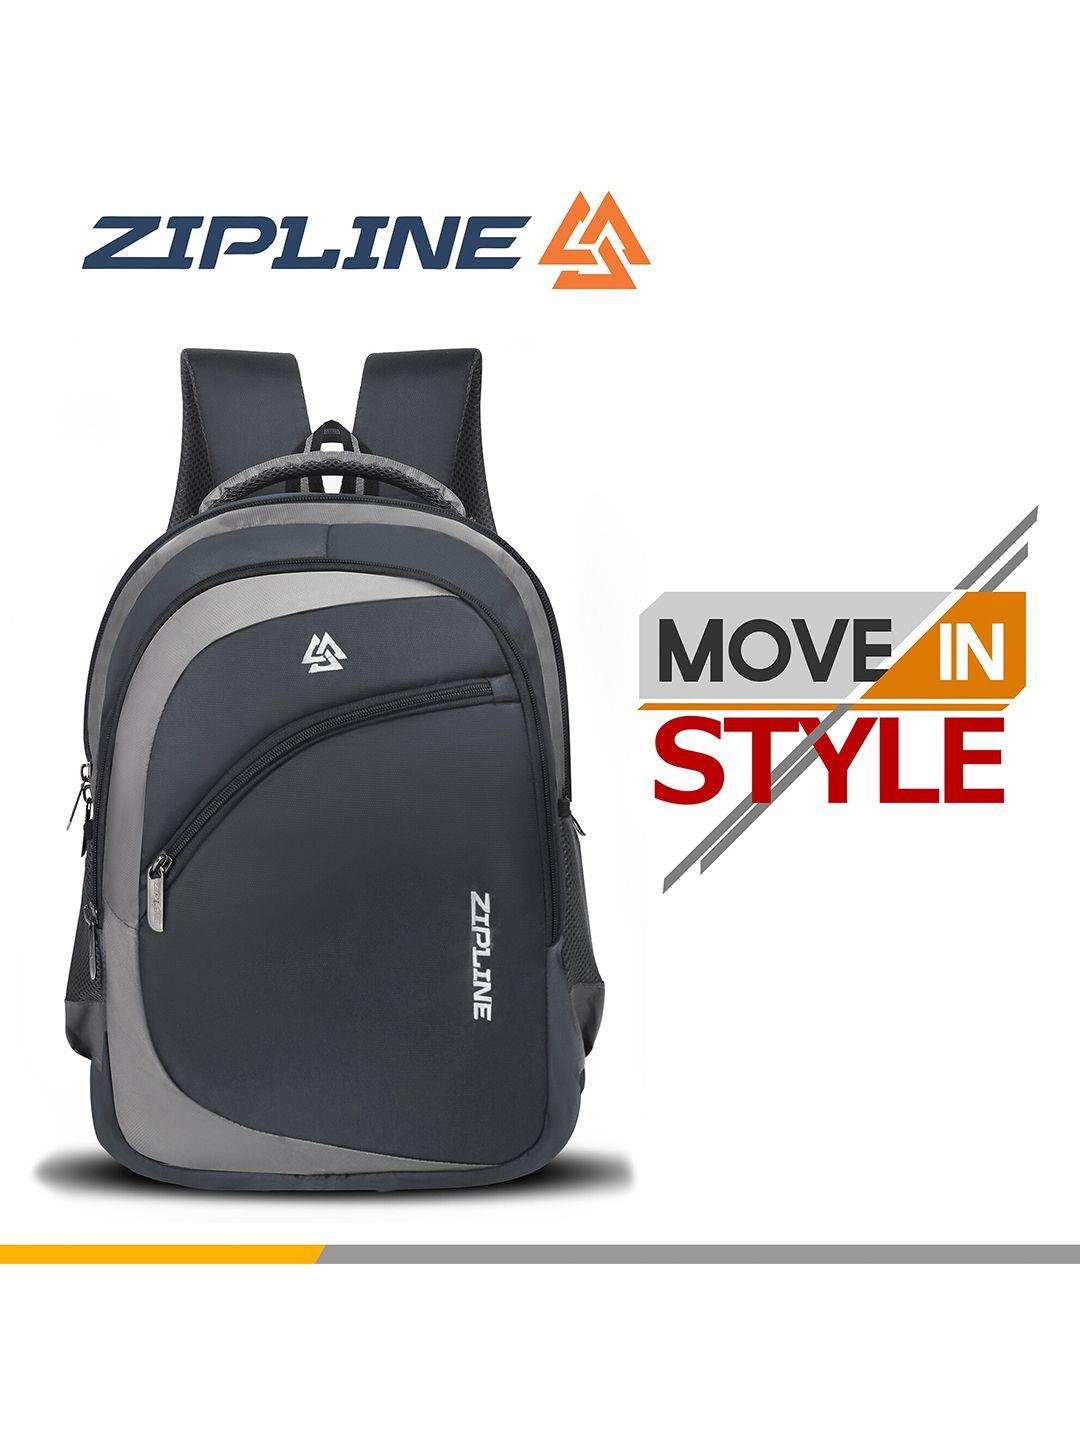 zipline unisex grey & black casual backpack